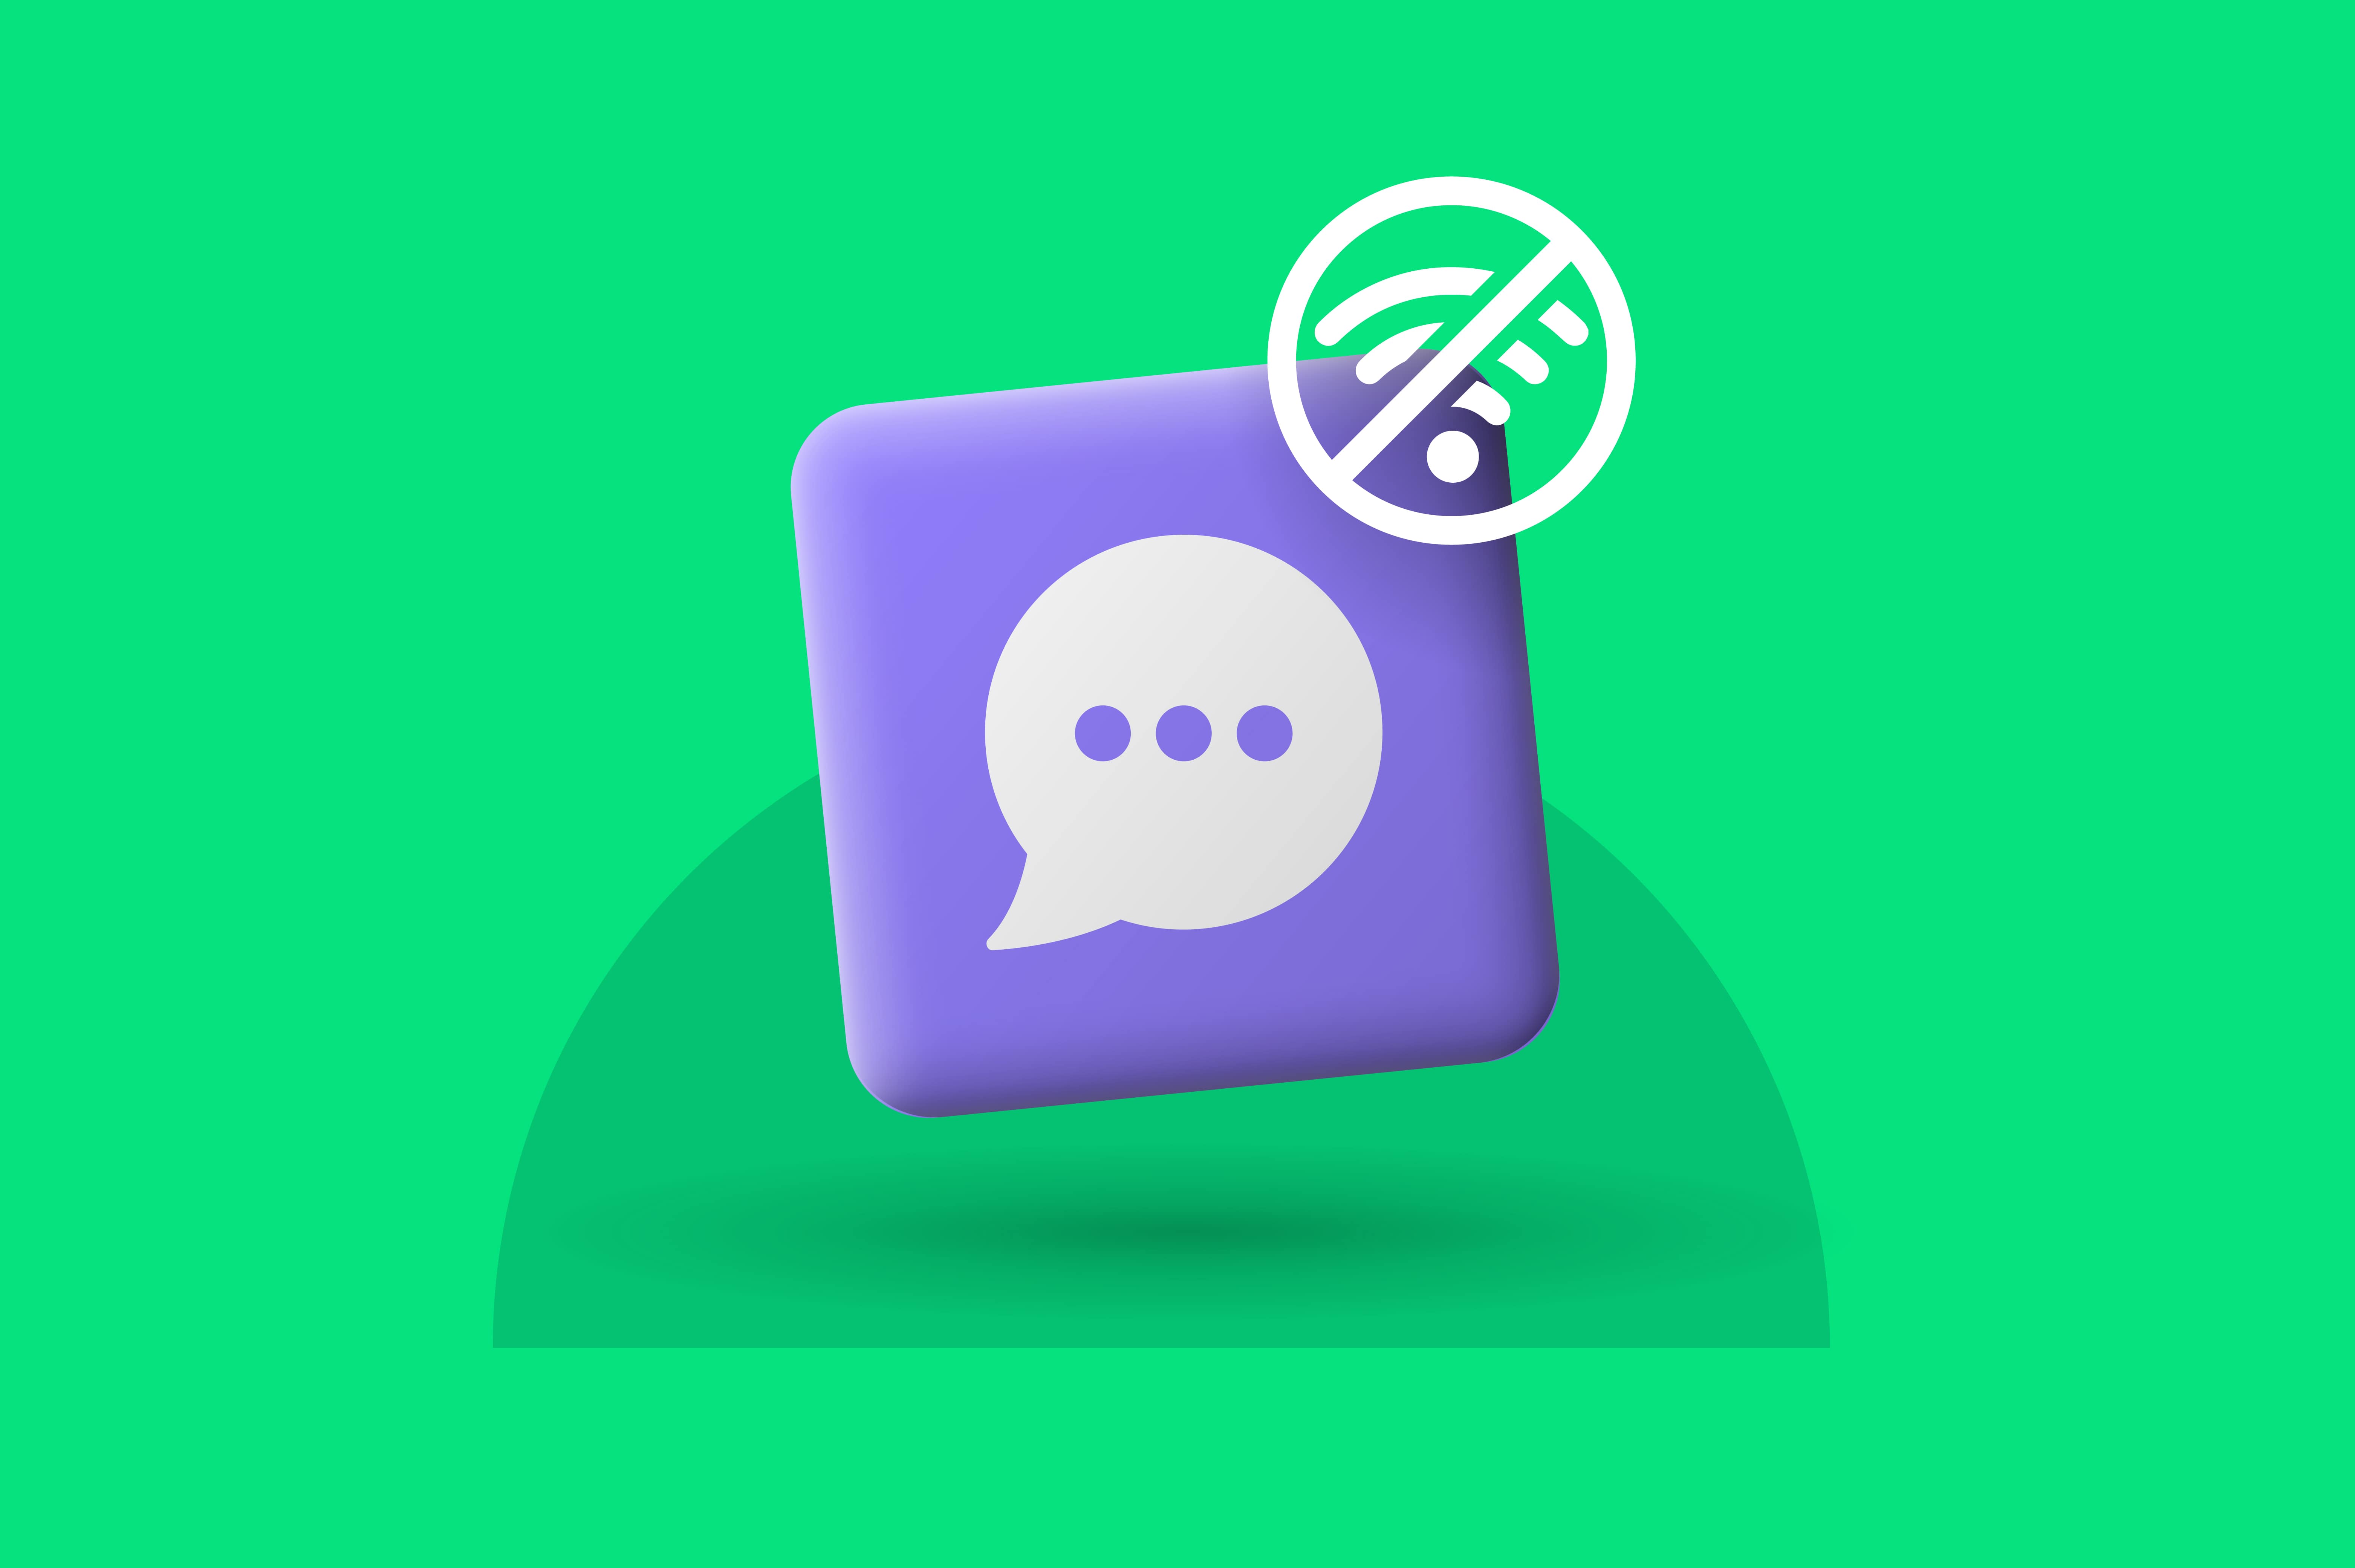 সেরা অফলাইন মেসেজিং অ্যাপ - Best offline messaging app